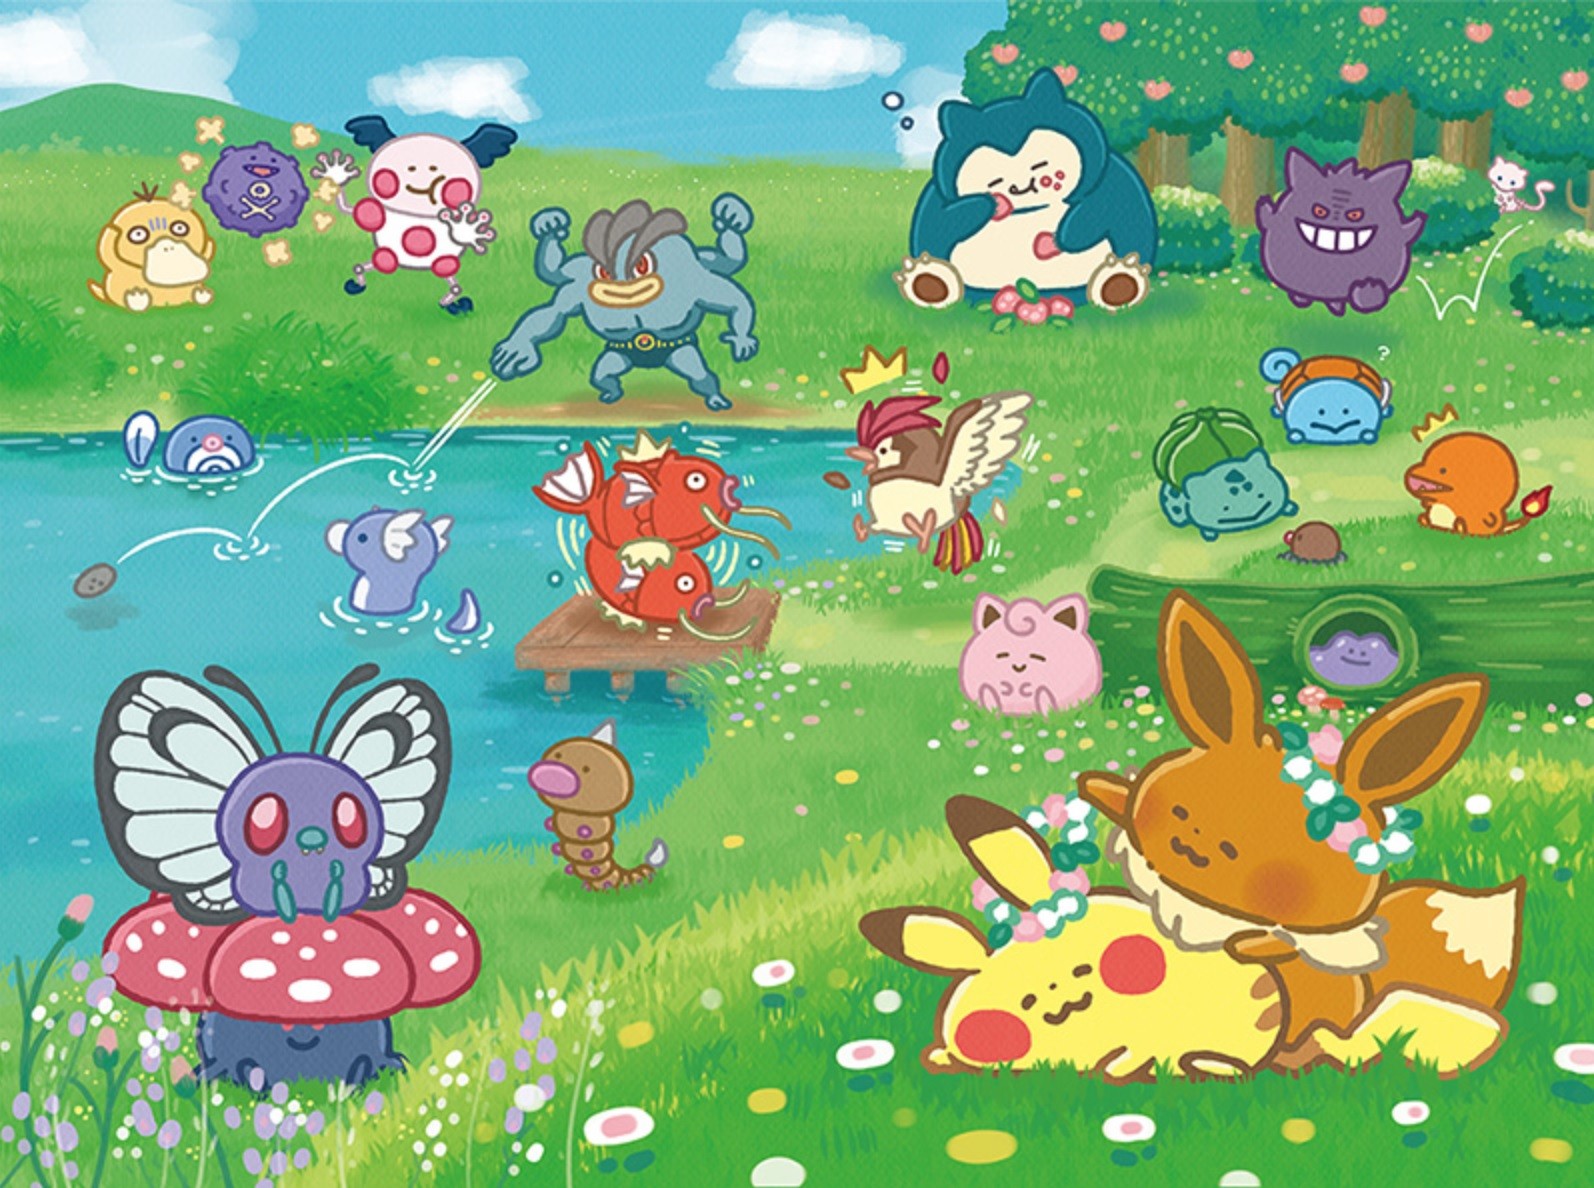 Hãy cùng khám phá thế giới rộng lớn của Pokémon Yurutto qua tấm ảnh này! Với nhiều hình ảnh đầy sắc màu và hình dáng độc đáo của những chú Pokémon, bạn sẽ không thể rời mắt khỏi bức tranh này!